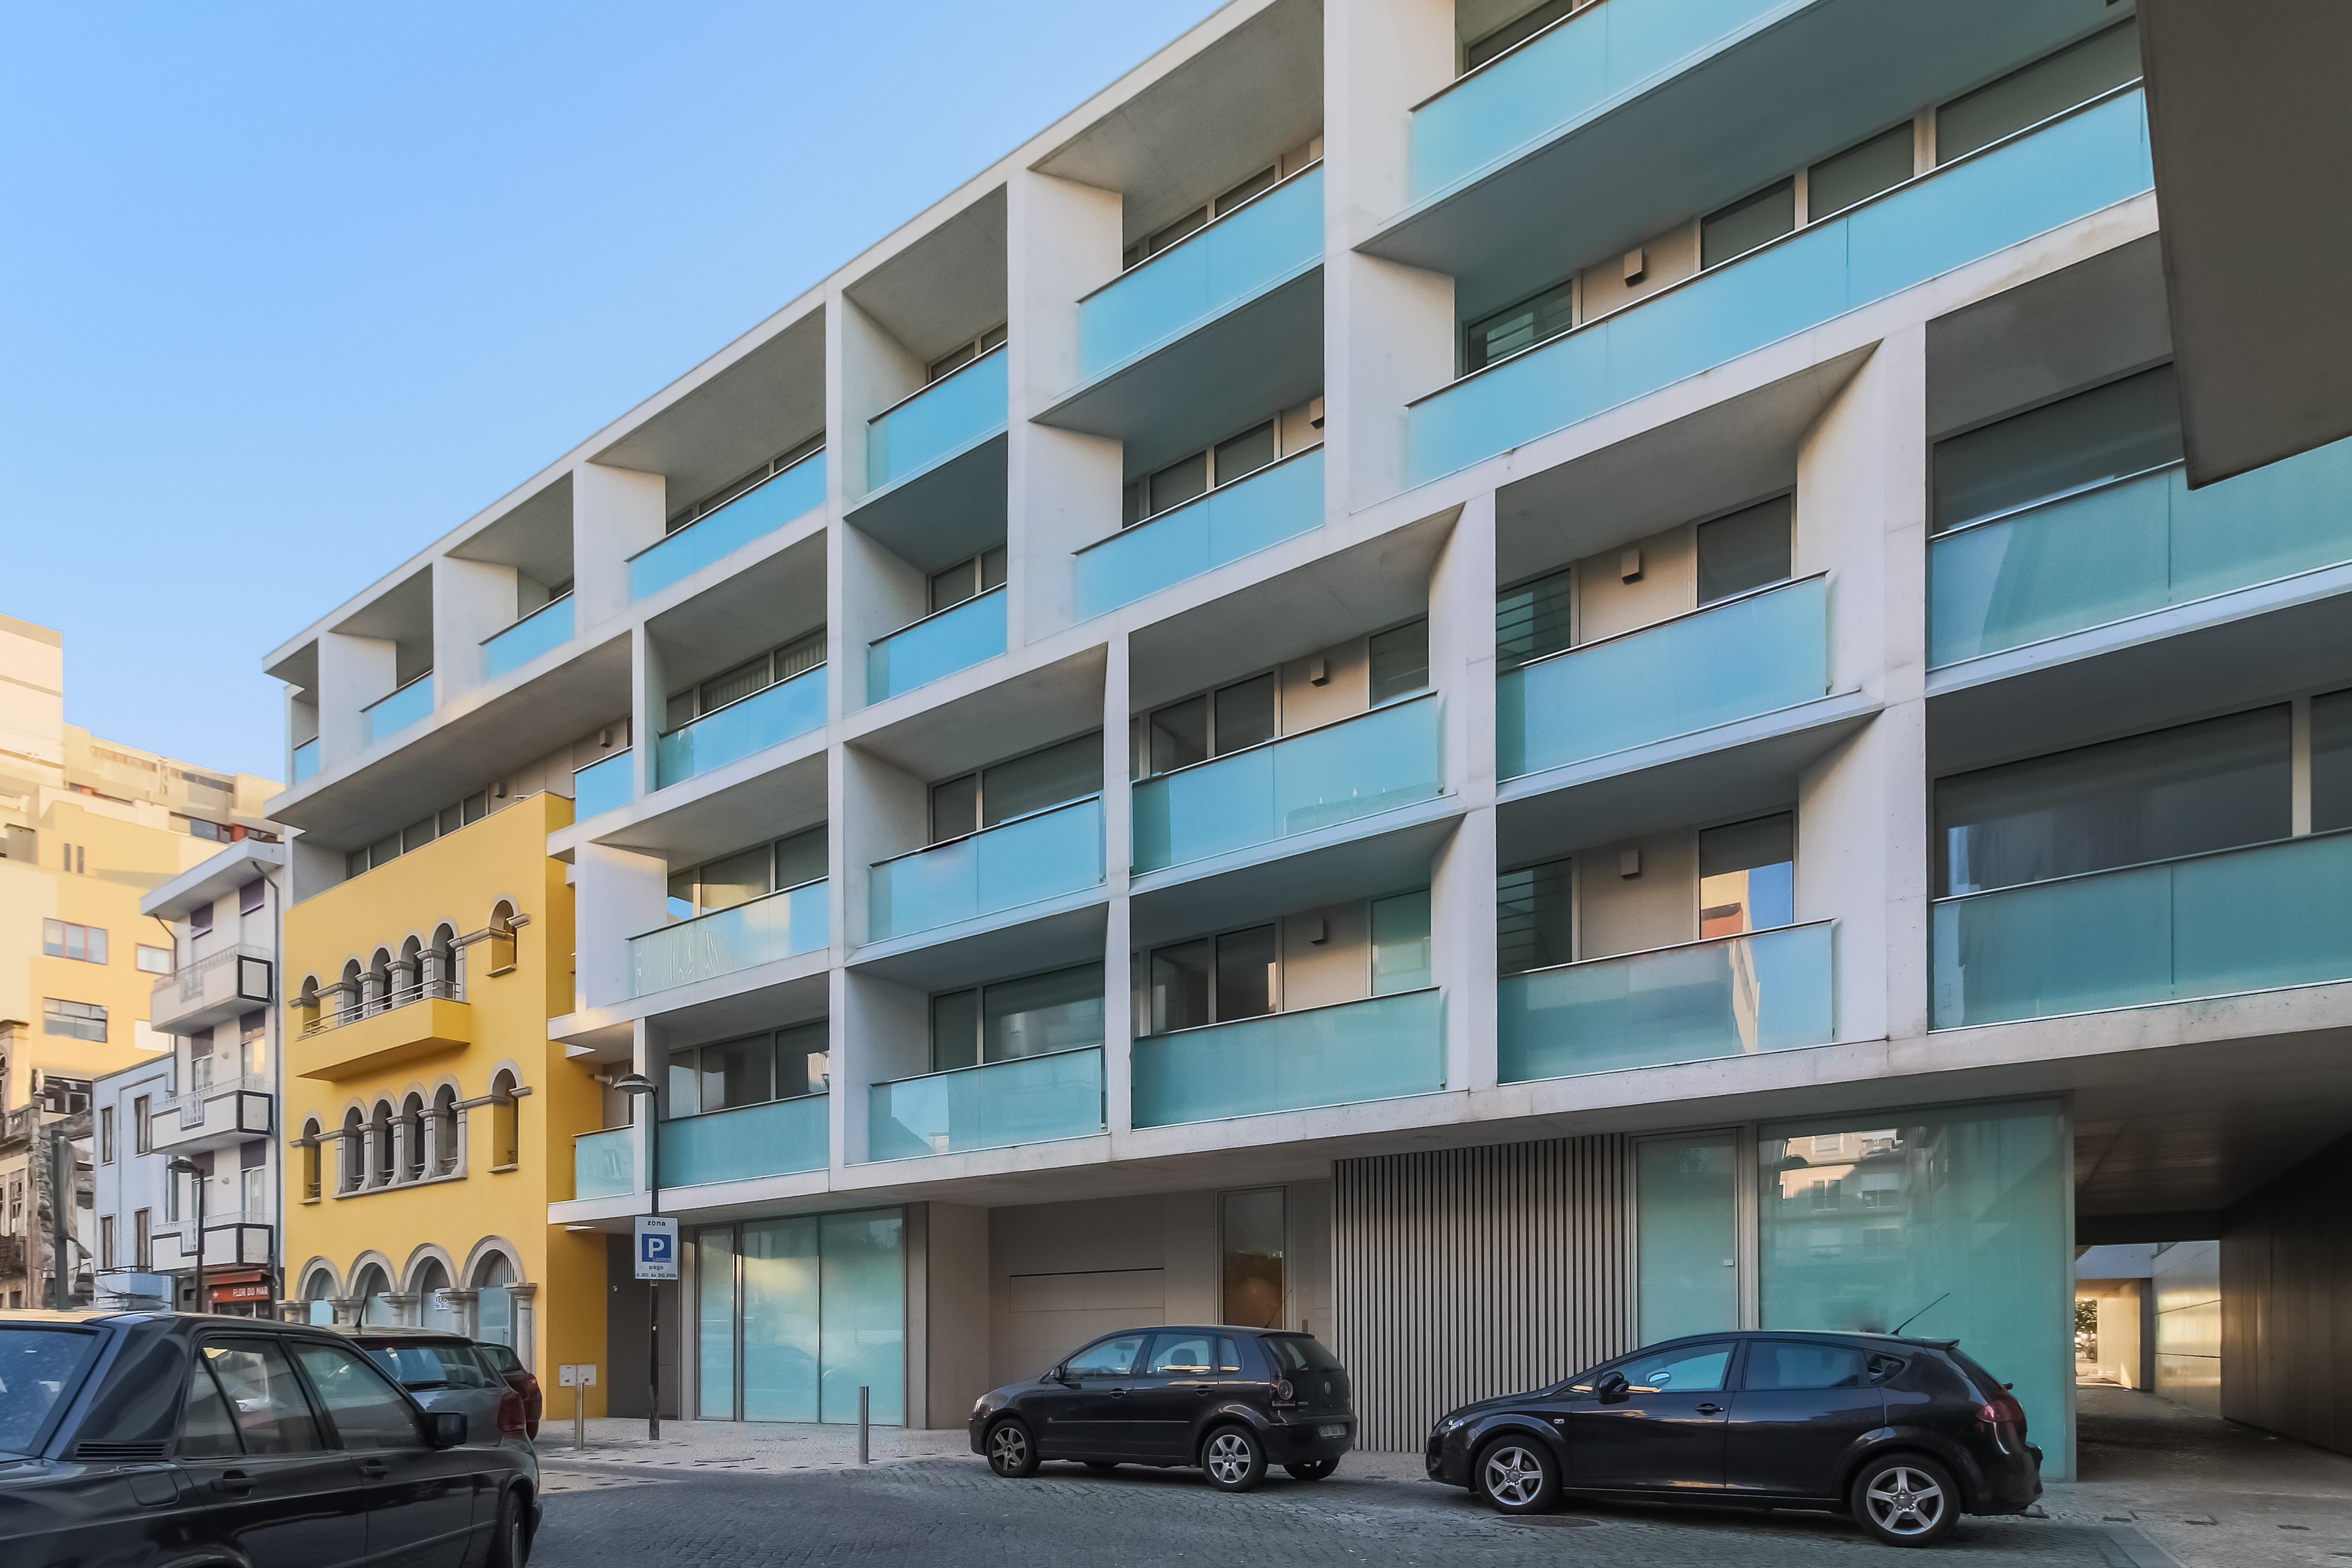  Novos apartamentos de luxo, em frente ao mar, Póvoa de Varzim, Ribamar, Nascente, praia, moderno, varanda